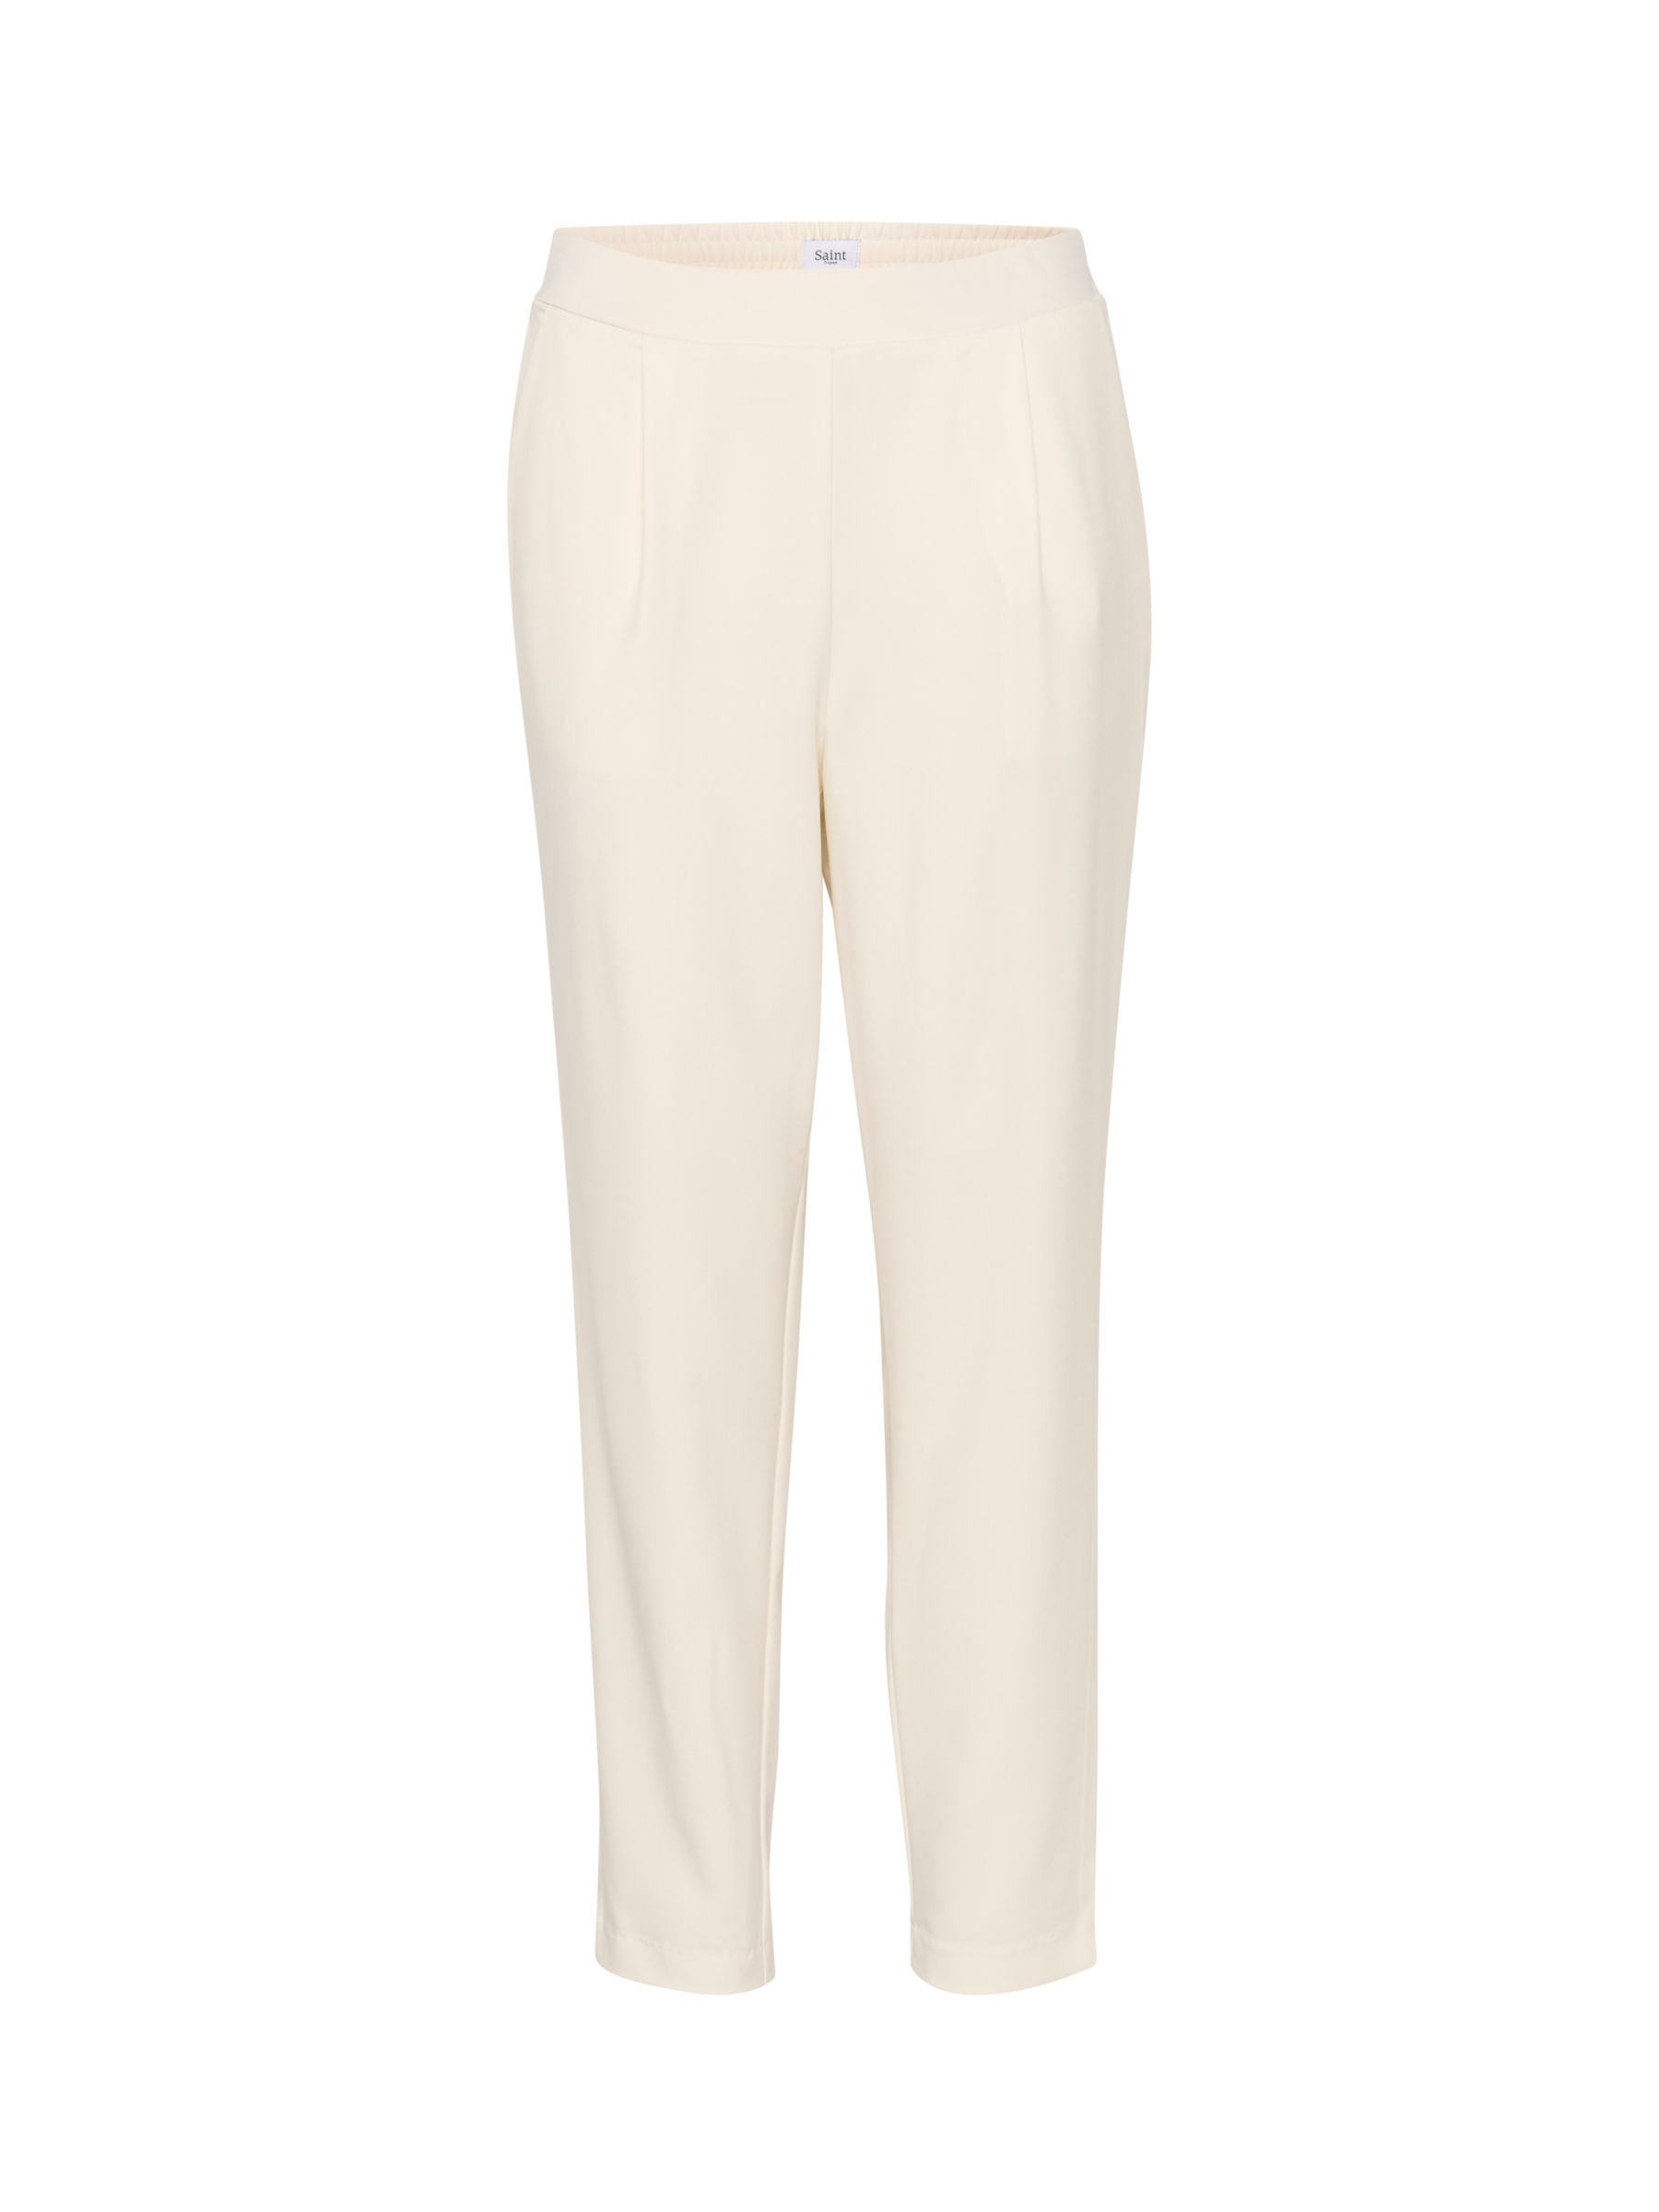 Buy Saint Tropez Celest Elasticated Waist Trousers Online at johnlewis.com